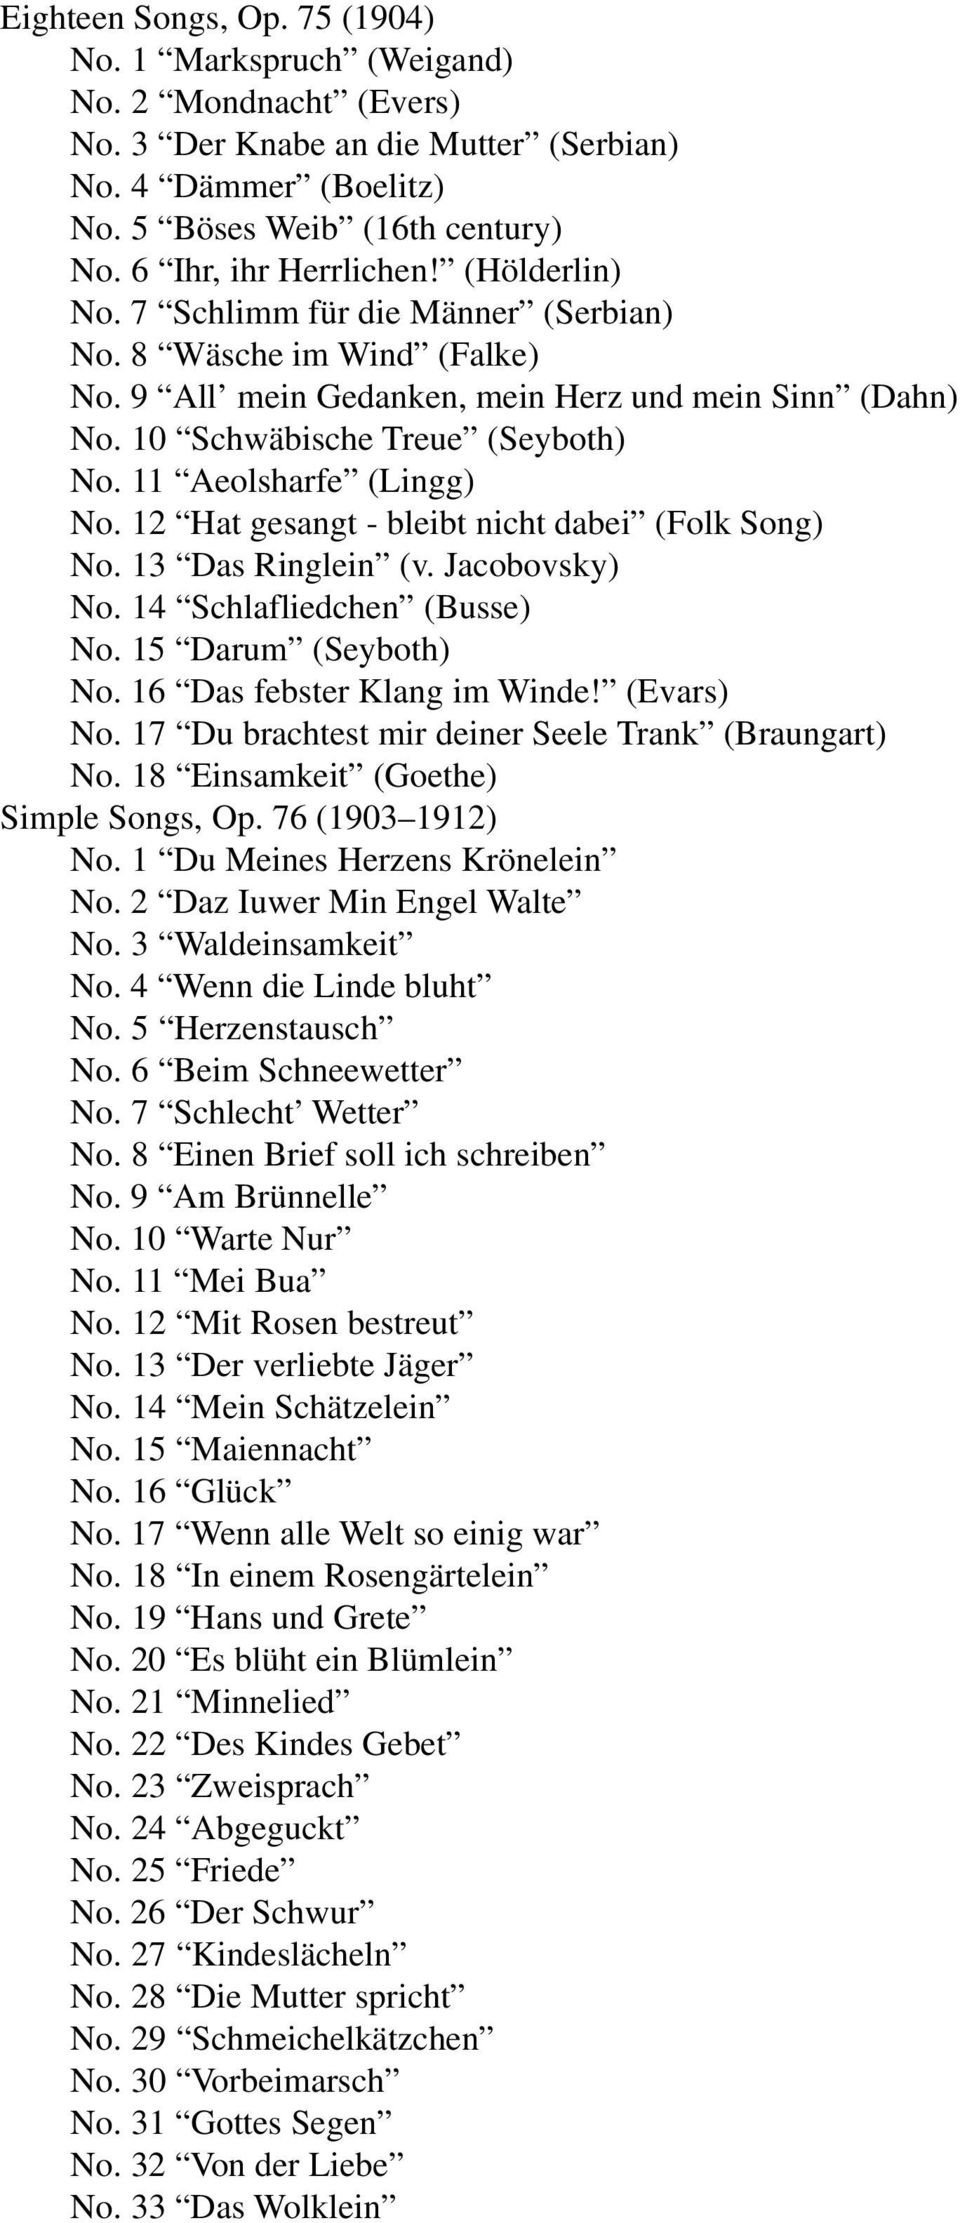 11 Aeolsharfe (Lingg) No. 12 Hat gesangt - bleibt nicht dabei (Folk Song) No. 13 Das Ringlein (v. Jacobovsky) No. 14 Schlafliedchen (Busse) No. 15 Darum (Seyboth) No. 16 Das febster Klang im Winde!